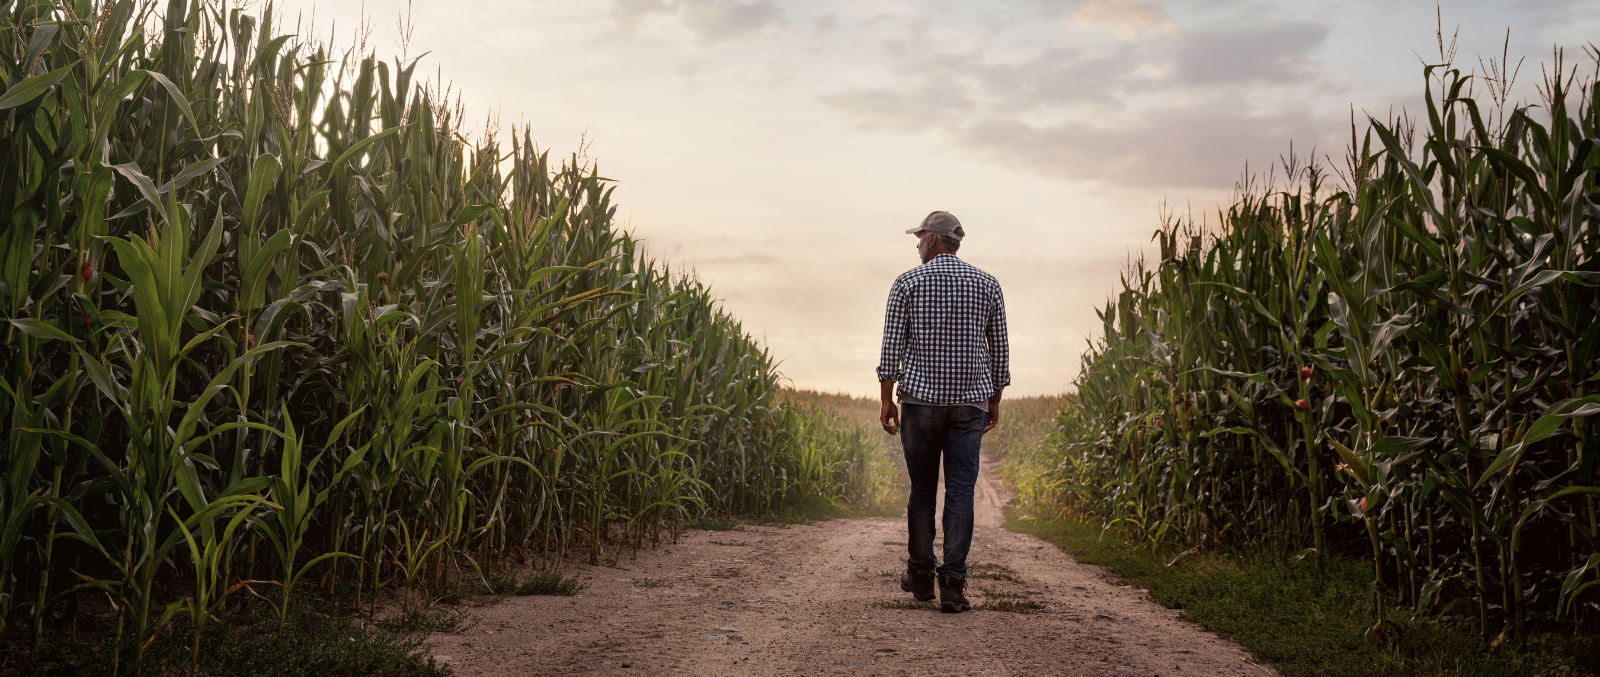 image of man walking corn field